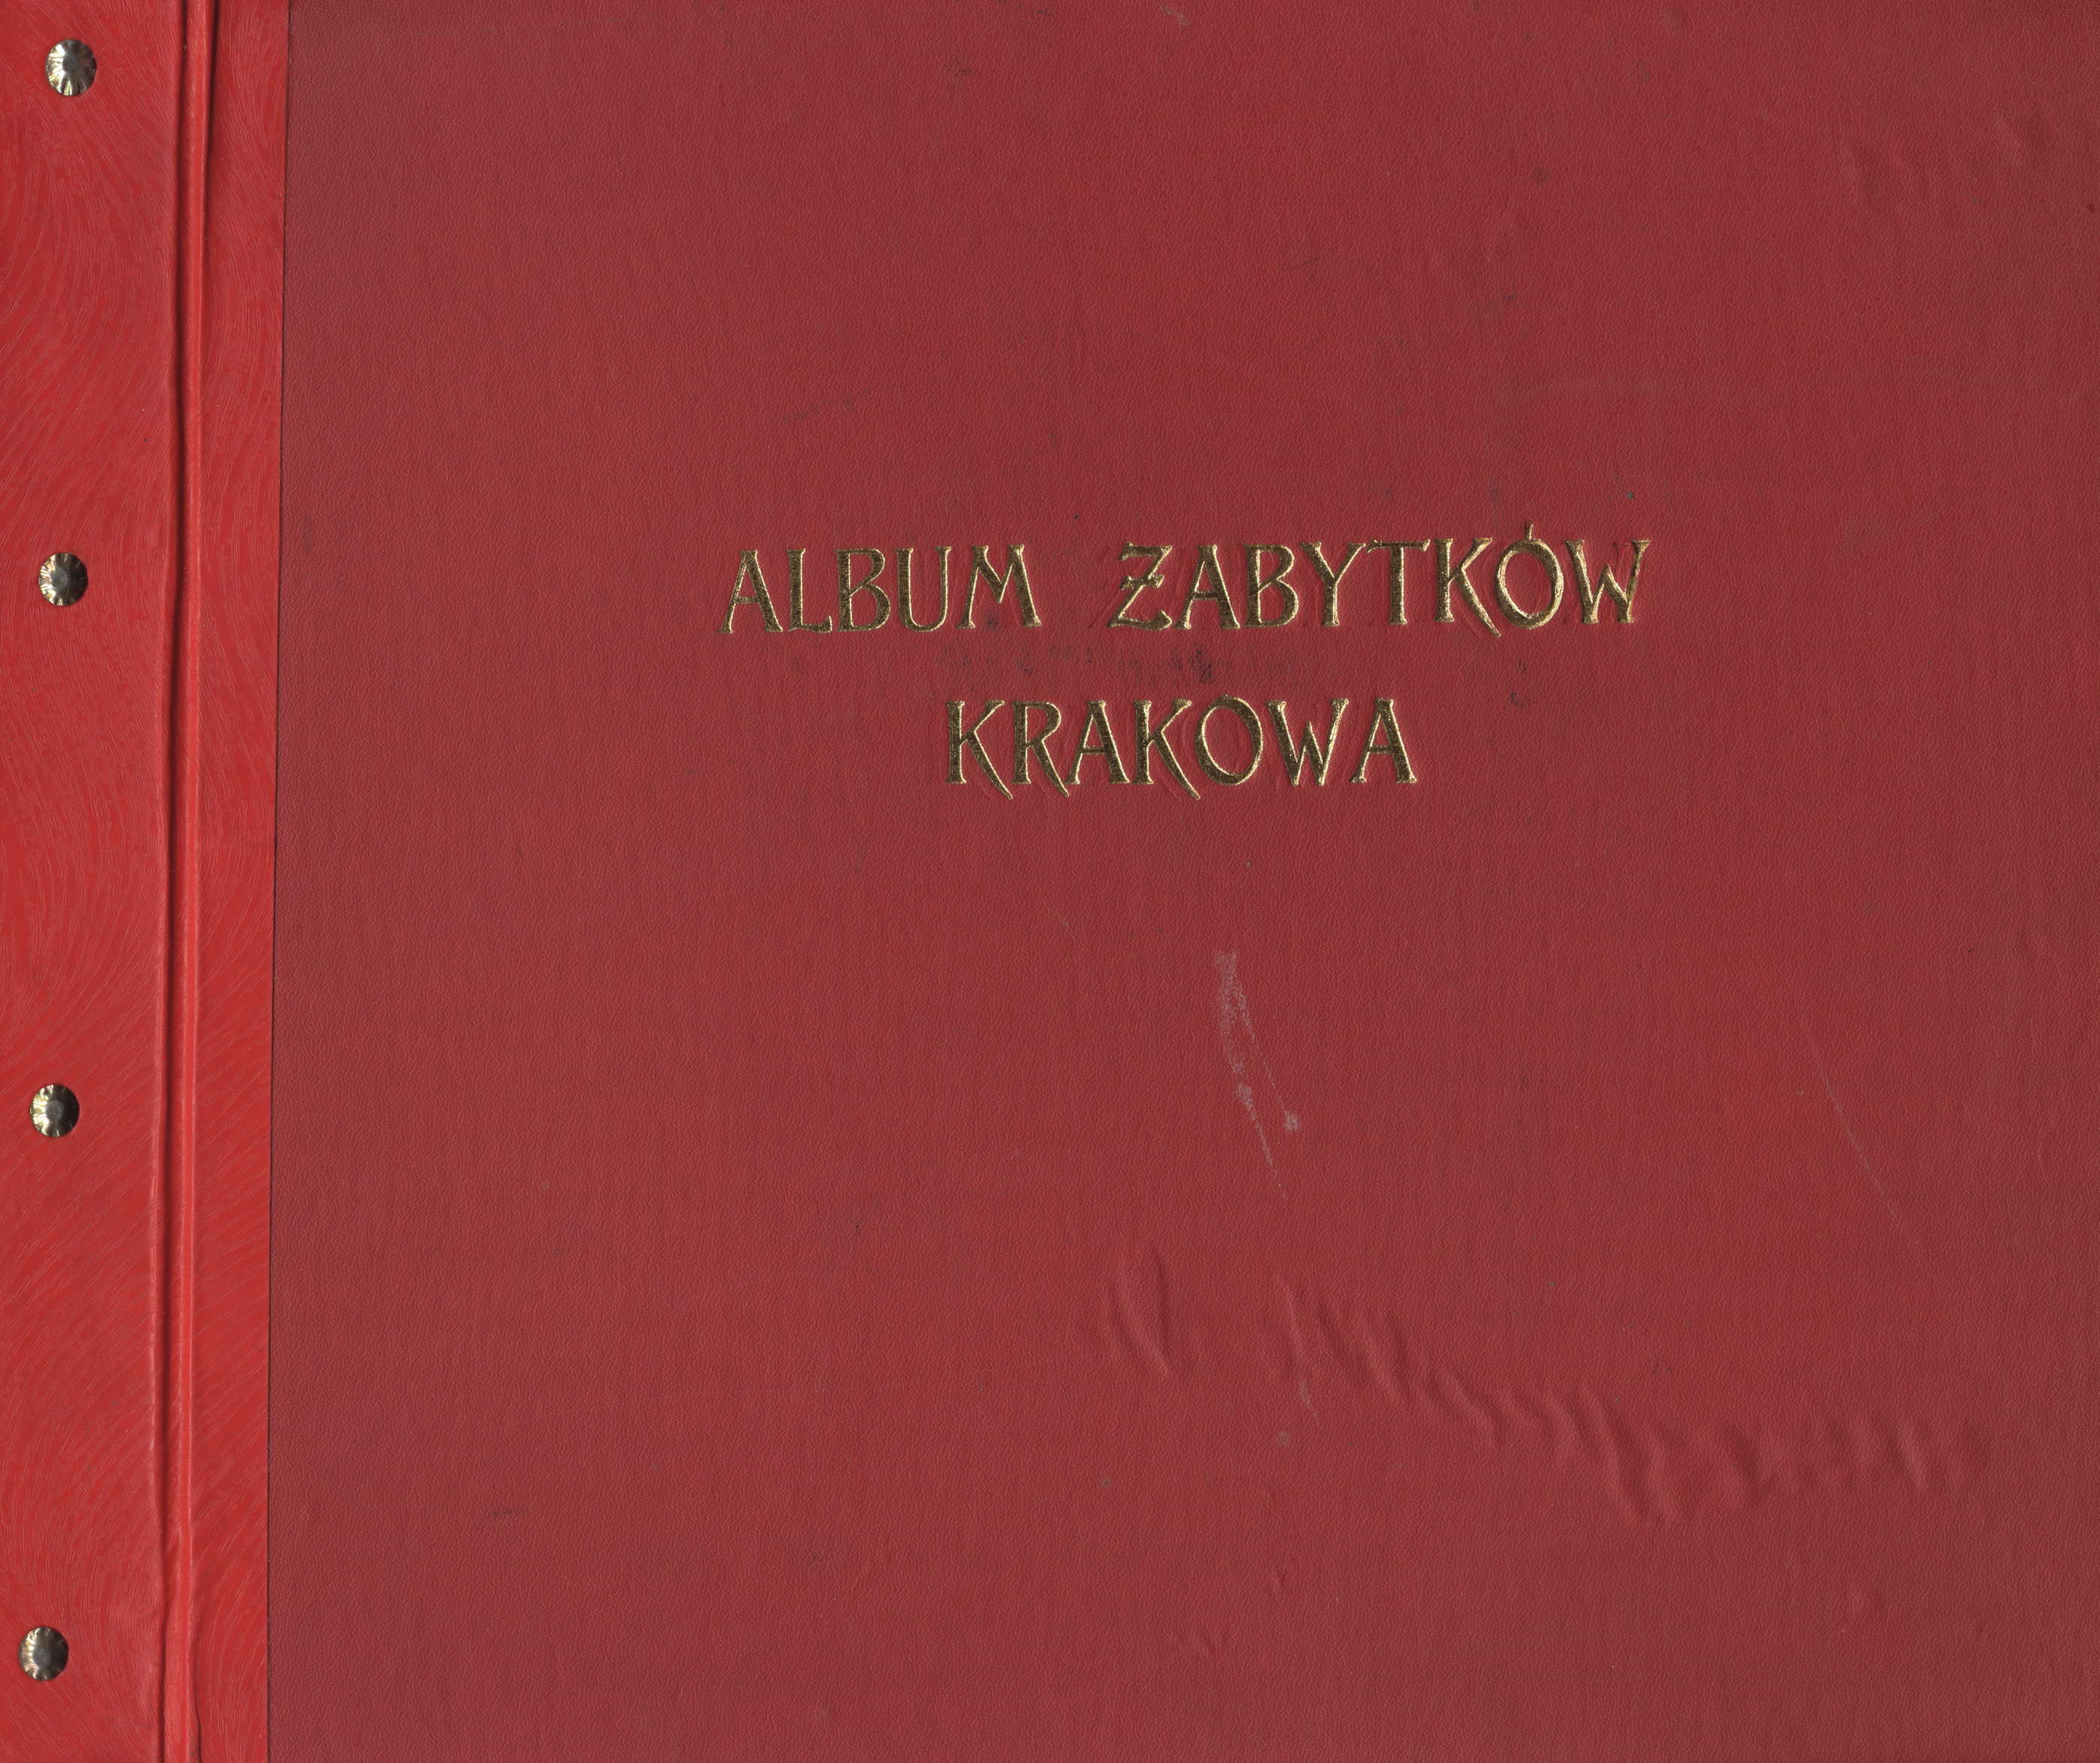 Album zabytków Krakowa. 1